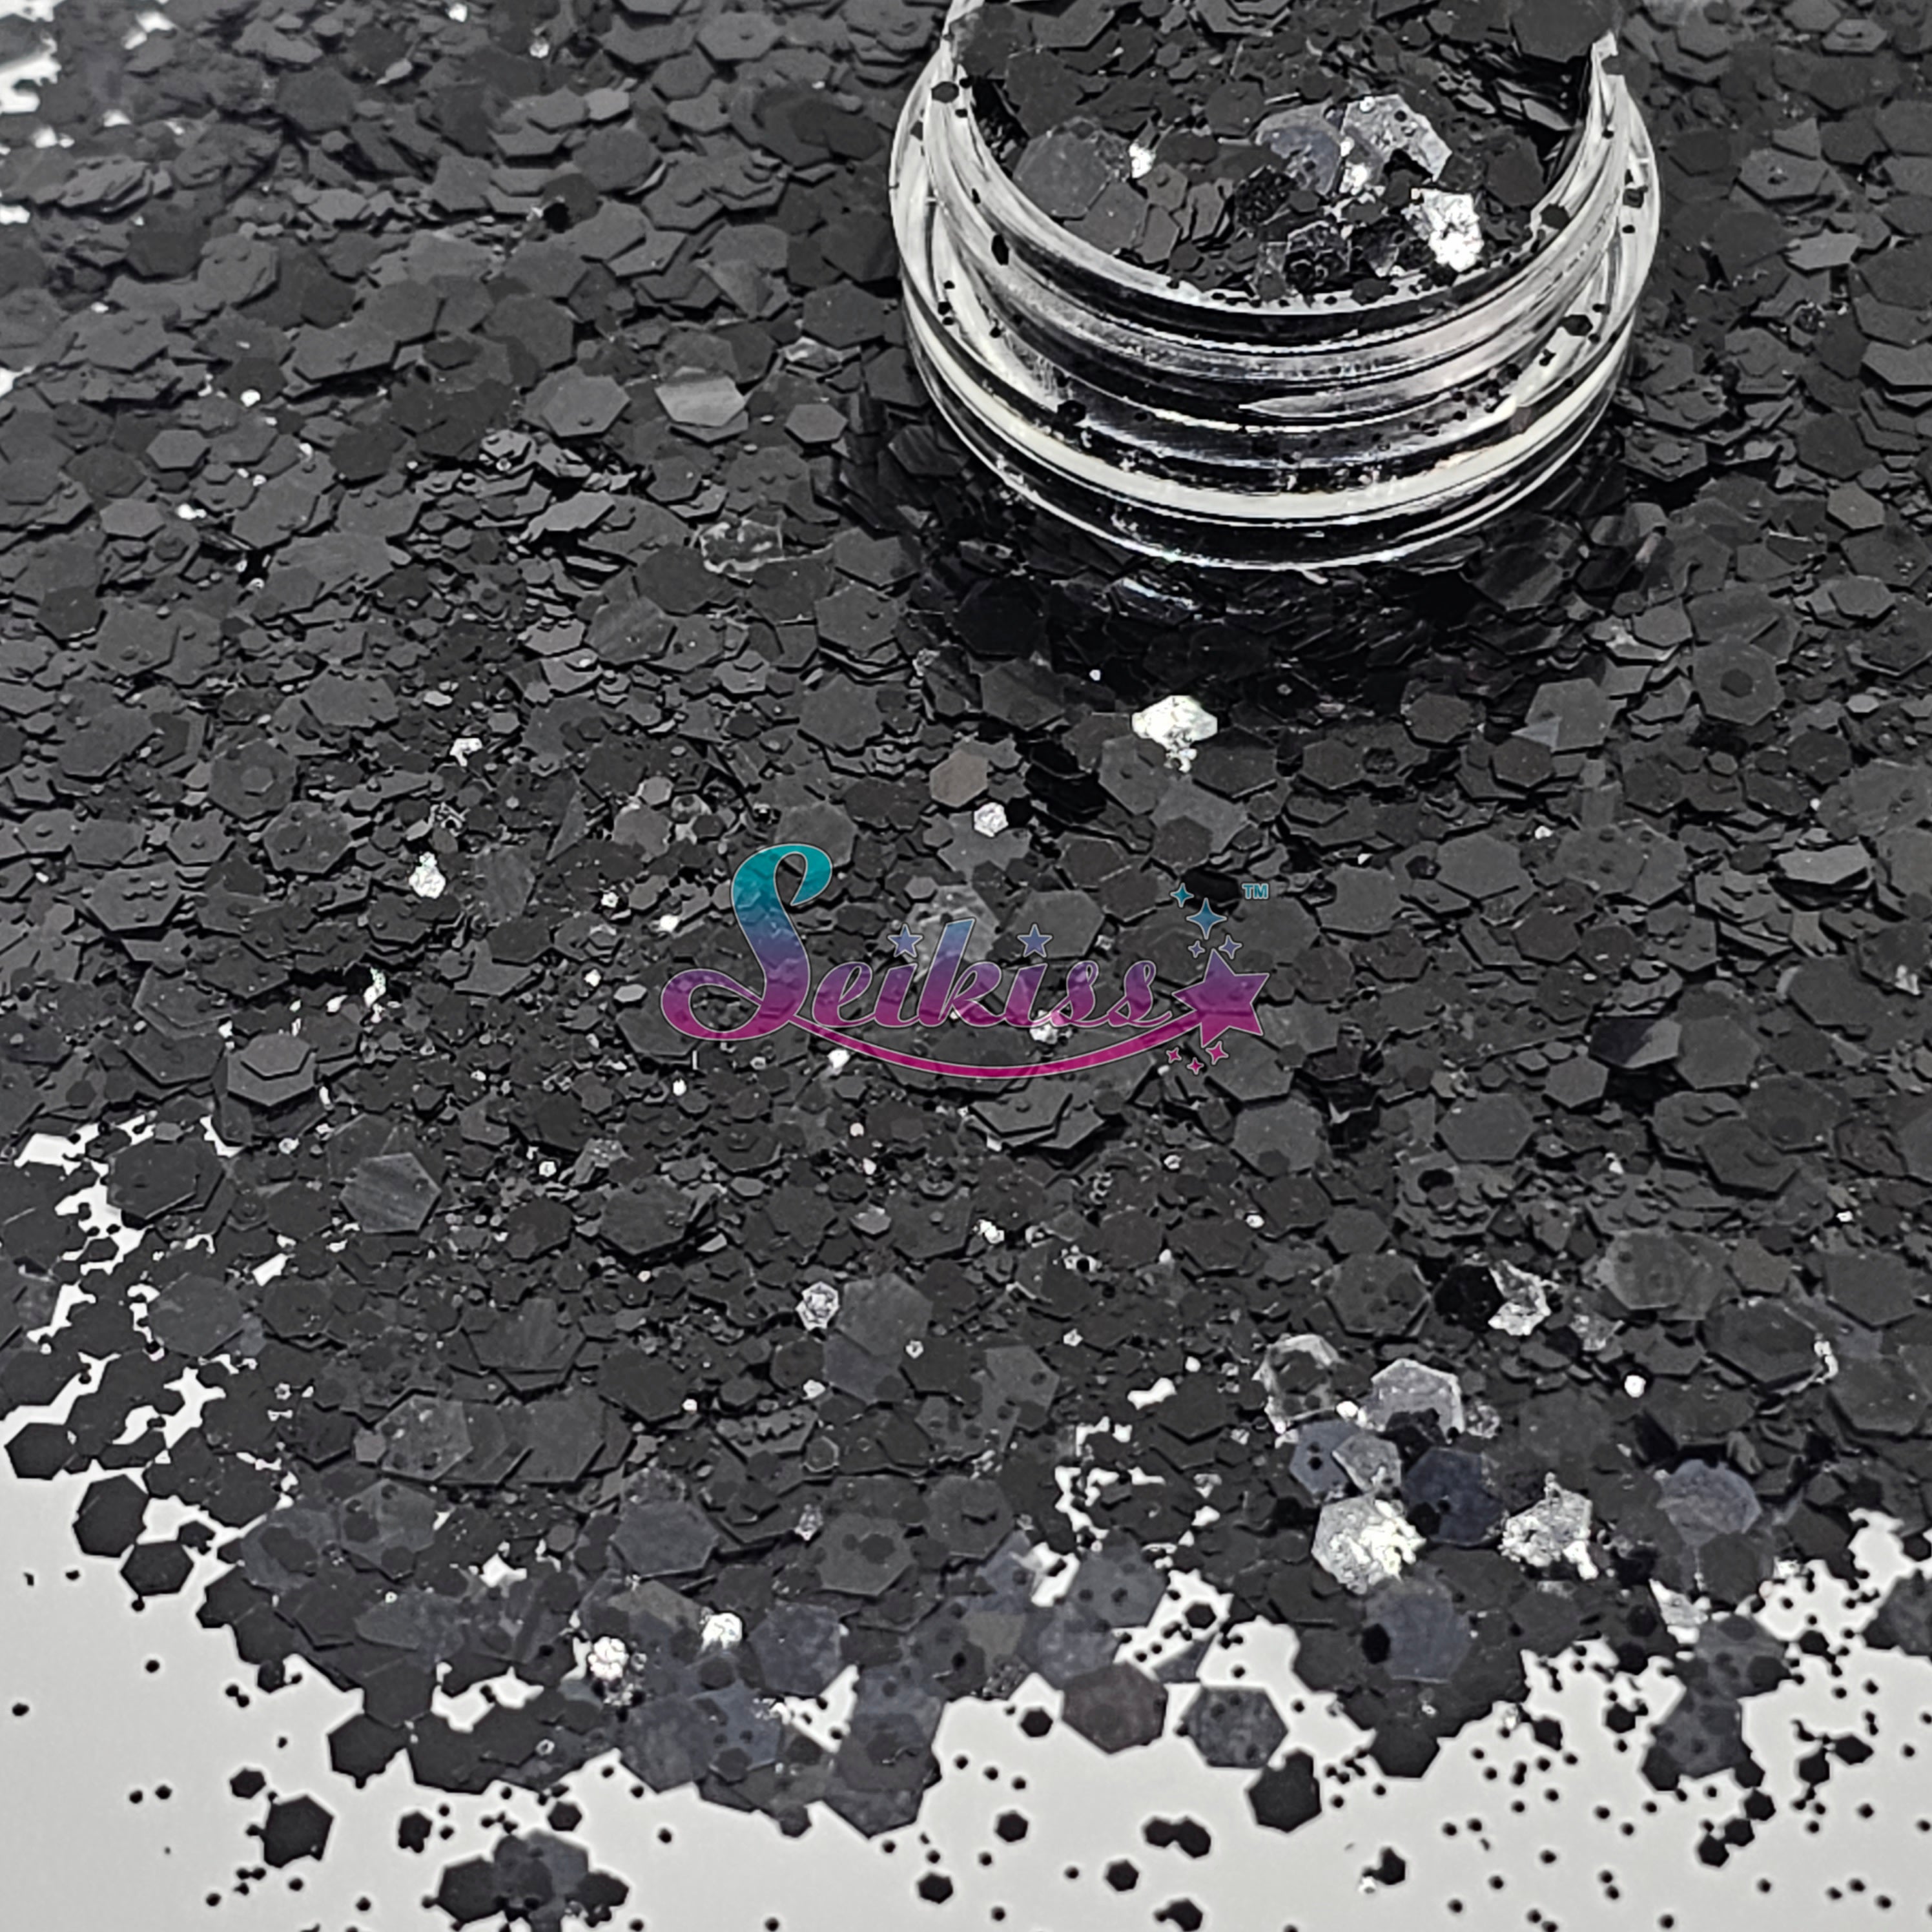 Onix Metallic Chunky Glitter - Black Glitter